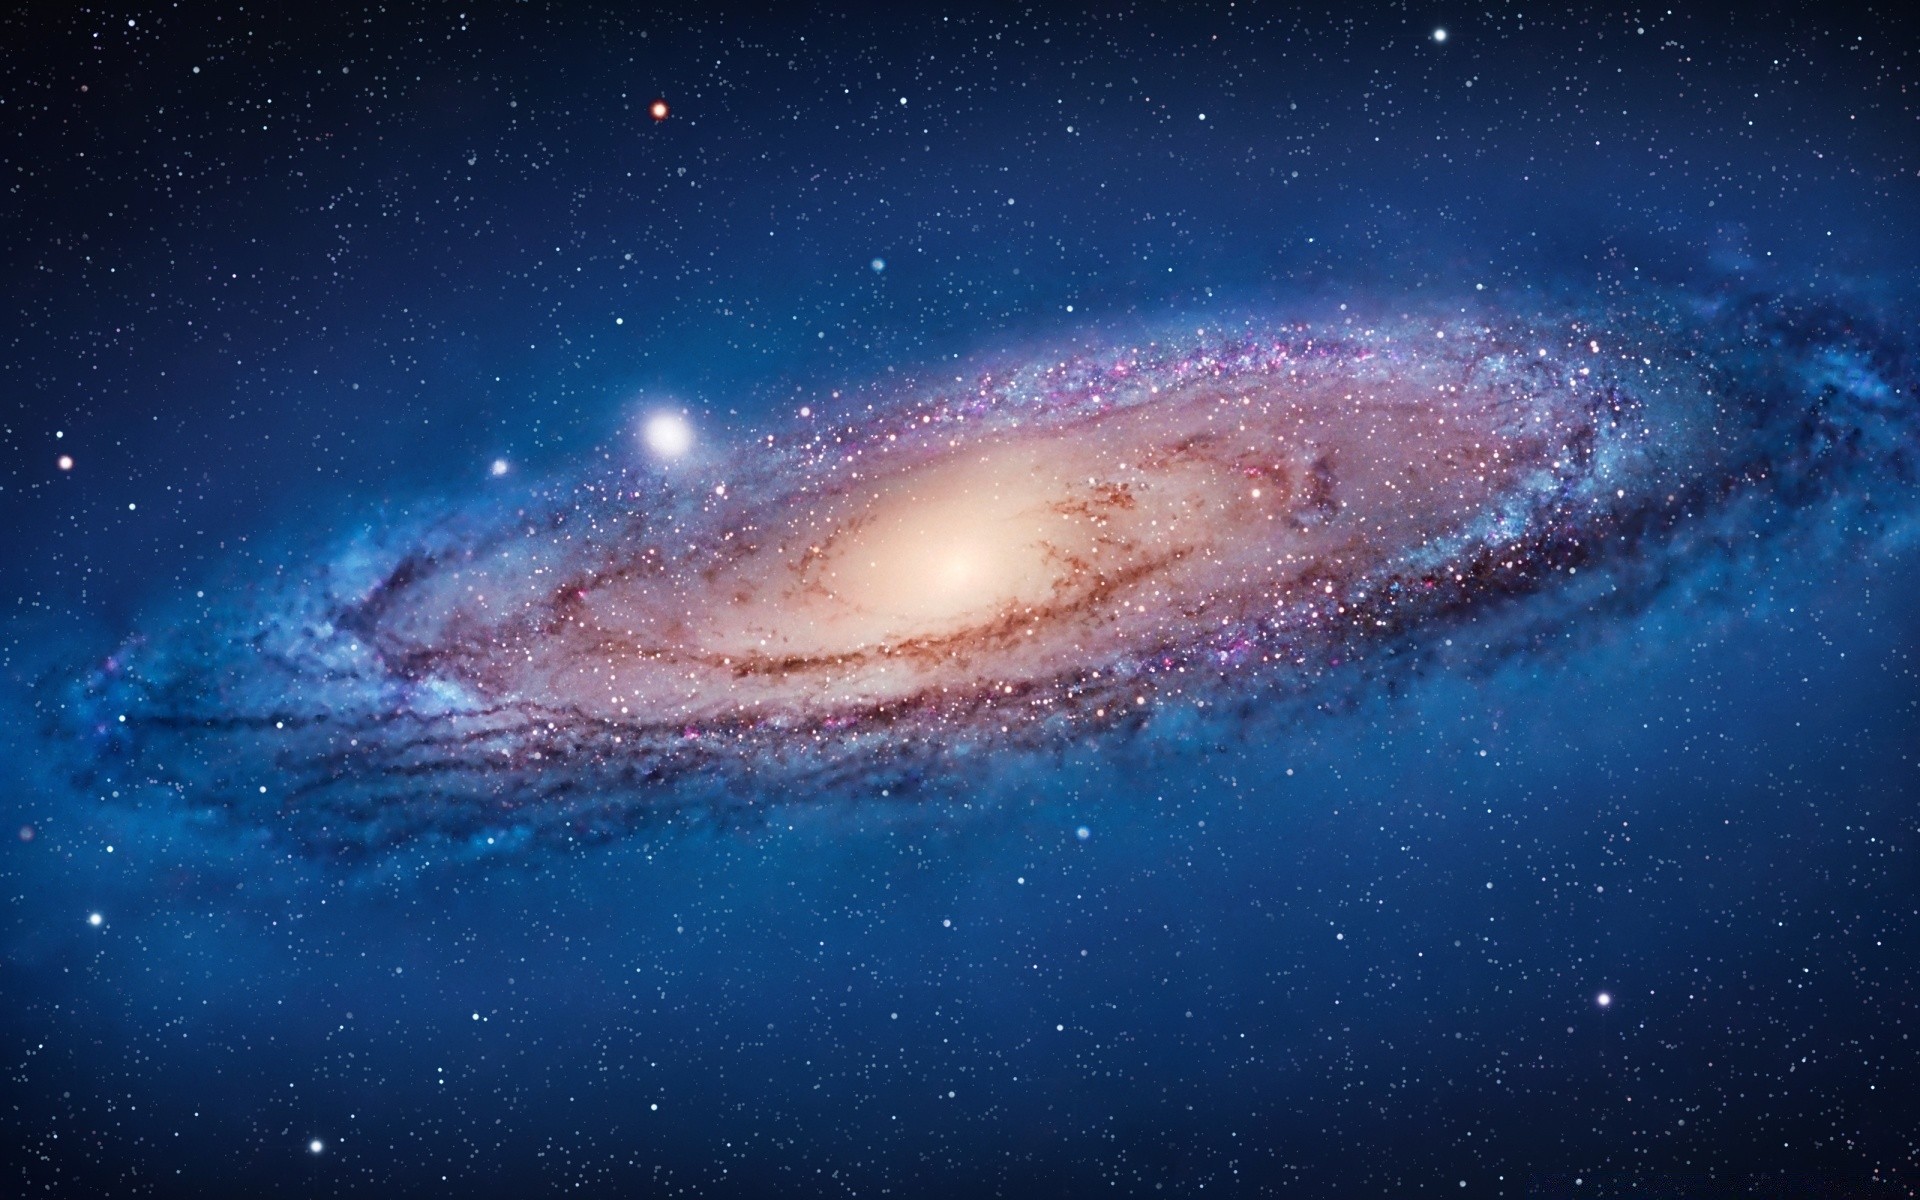 mac астрономия галактика луна разведка пространство планеты туманность глубокий бесконечность созвездие небо наука солнце астрология телескоп стеллар тайна пыль внешний